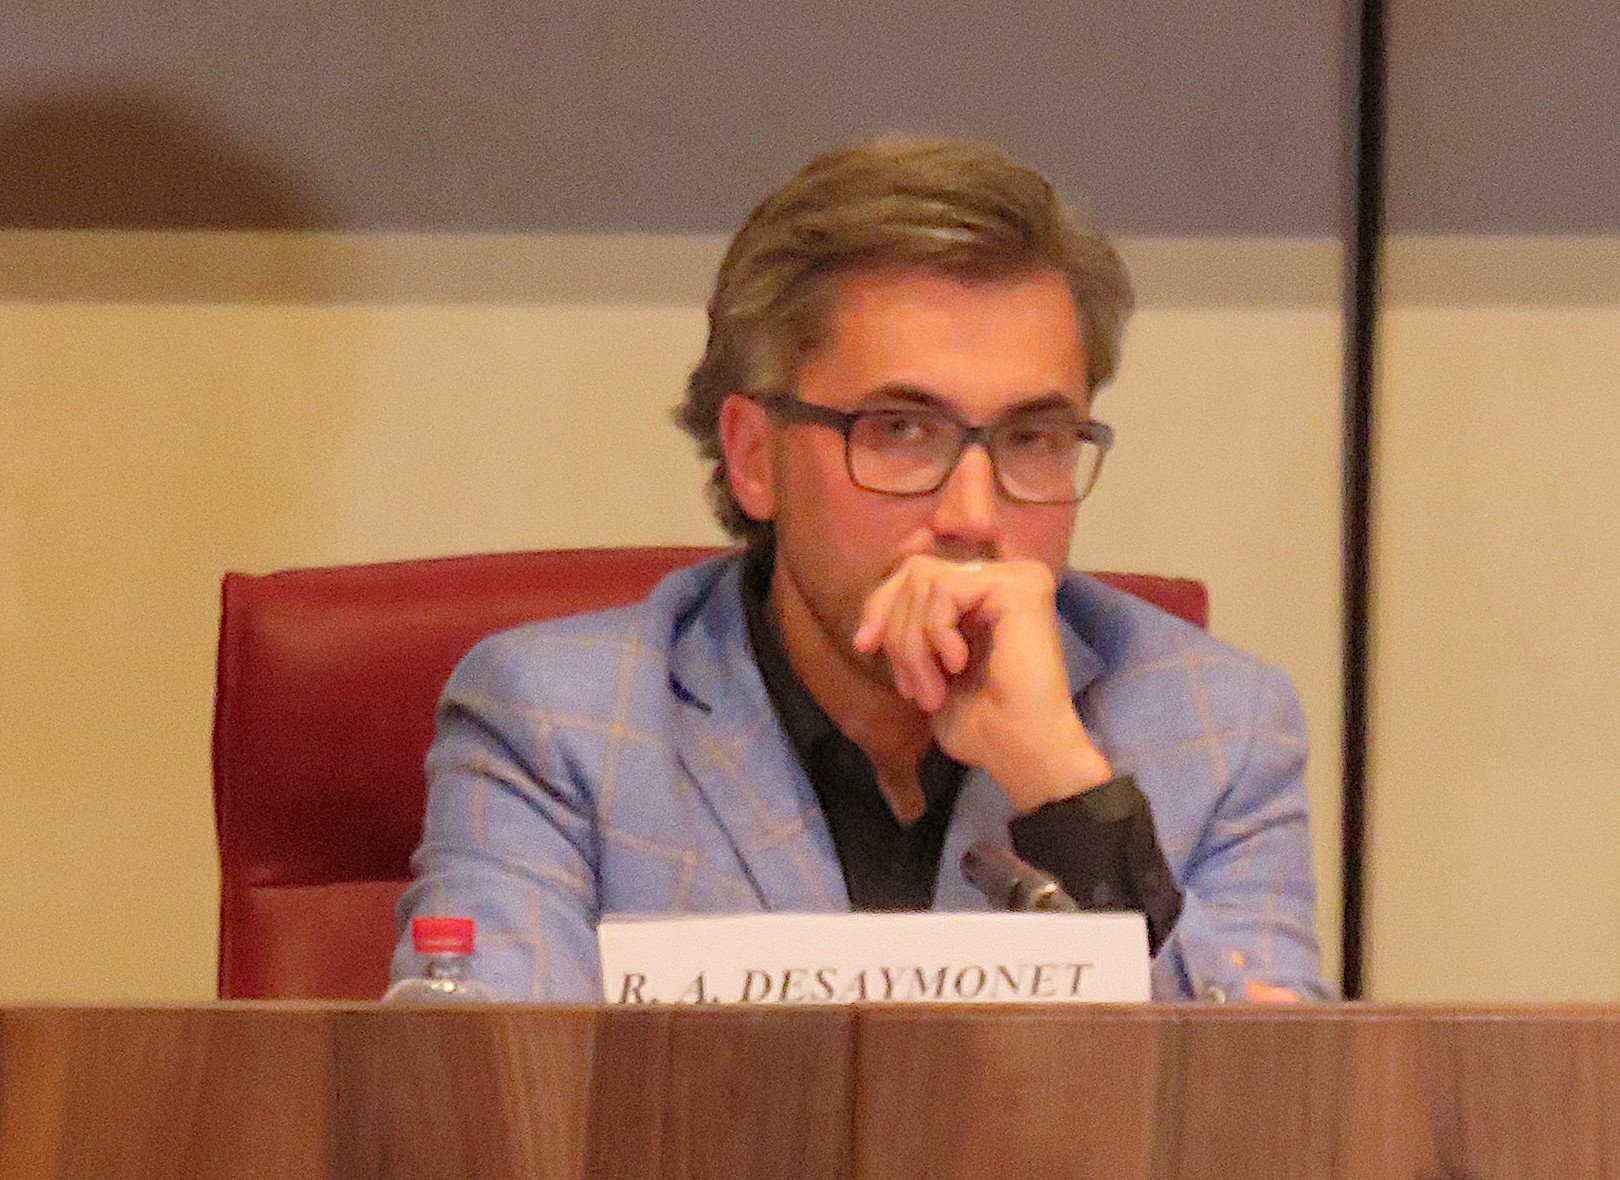 Raphaël Desaymonet